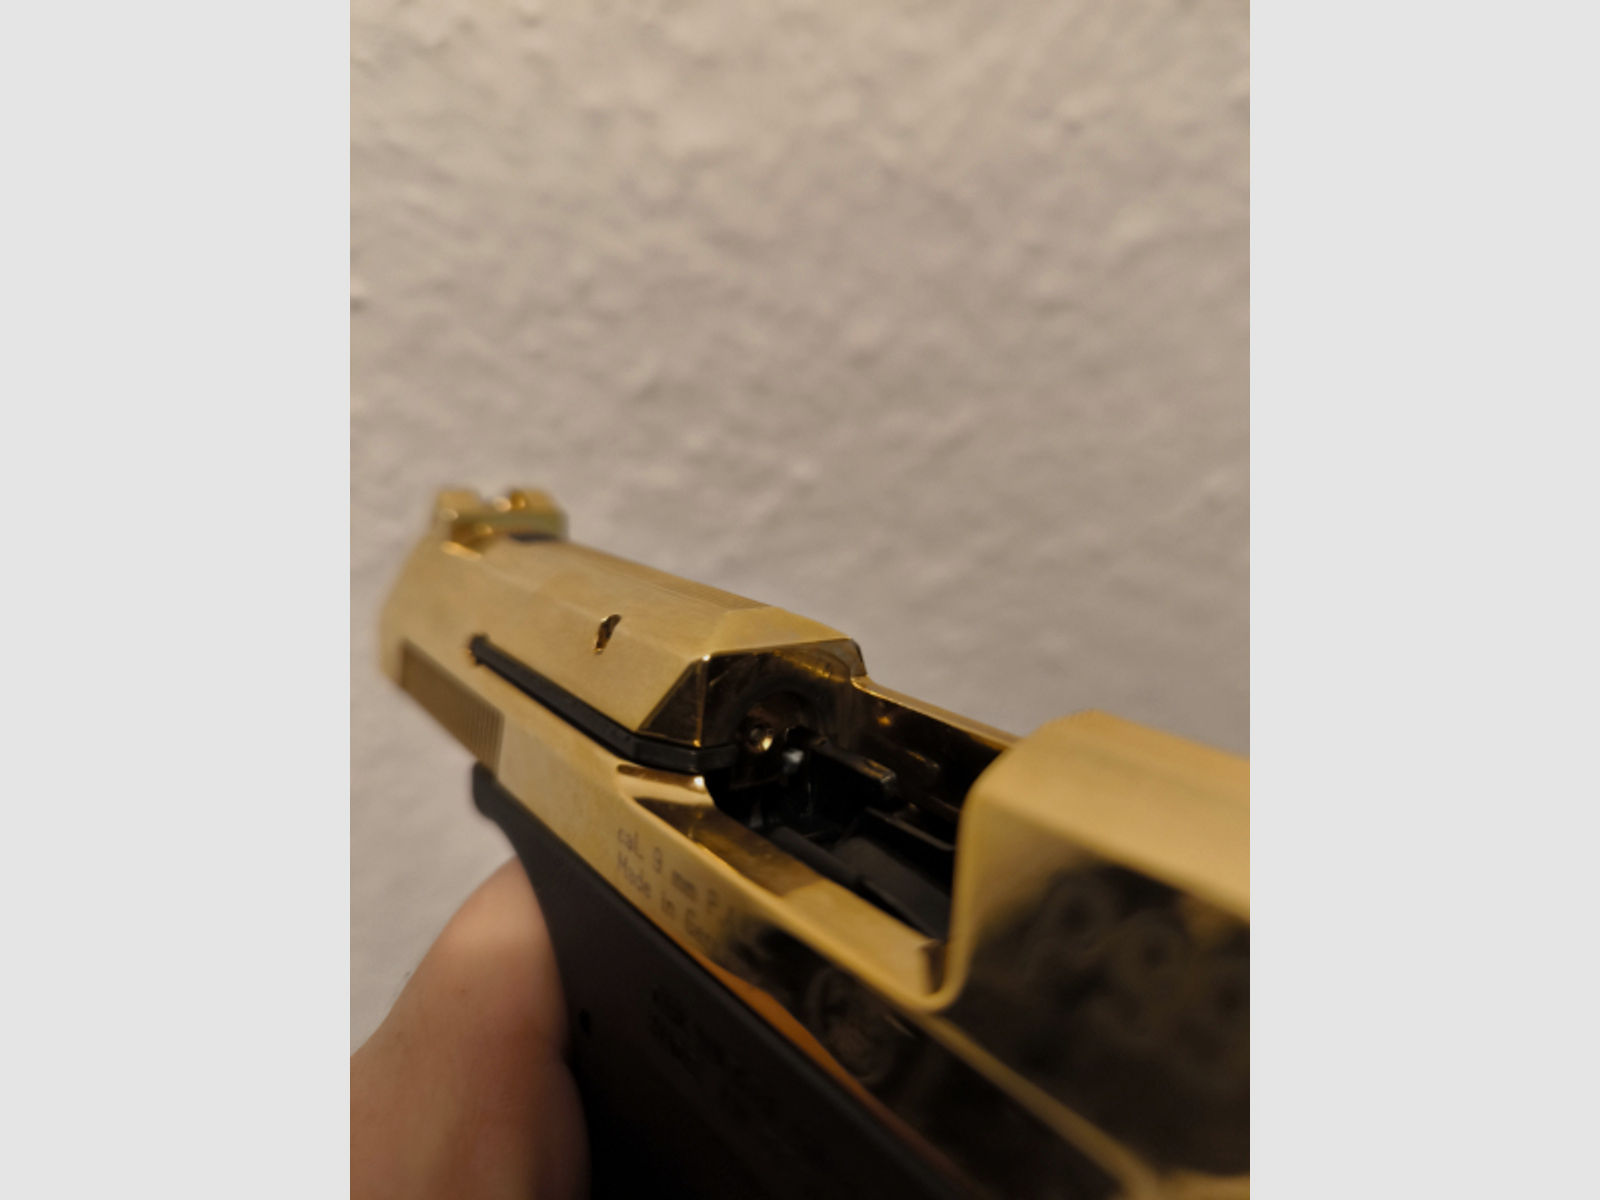 Walther P99 Gold ungeschossen